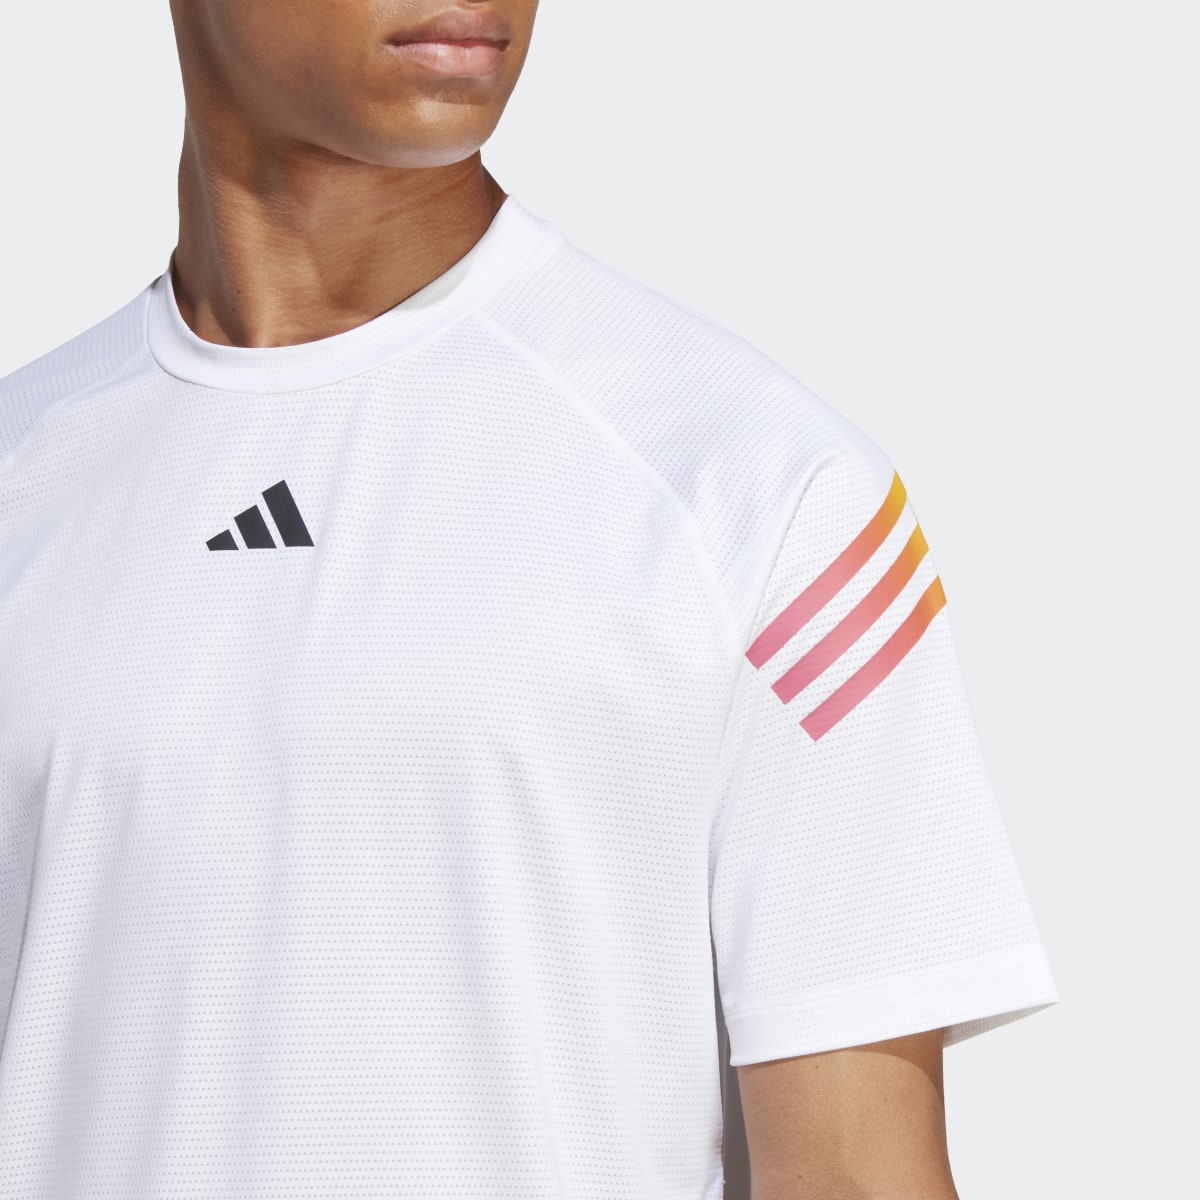 Adidas Train Icons 3-Stripes Training T-Shirt. 6